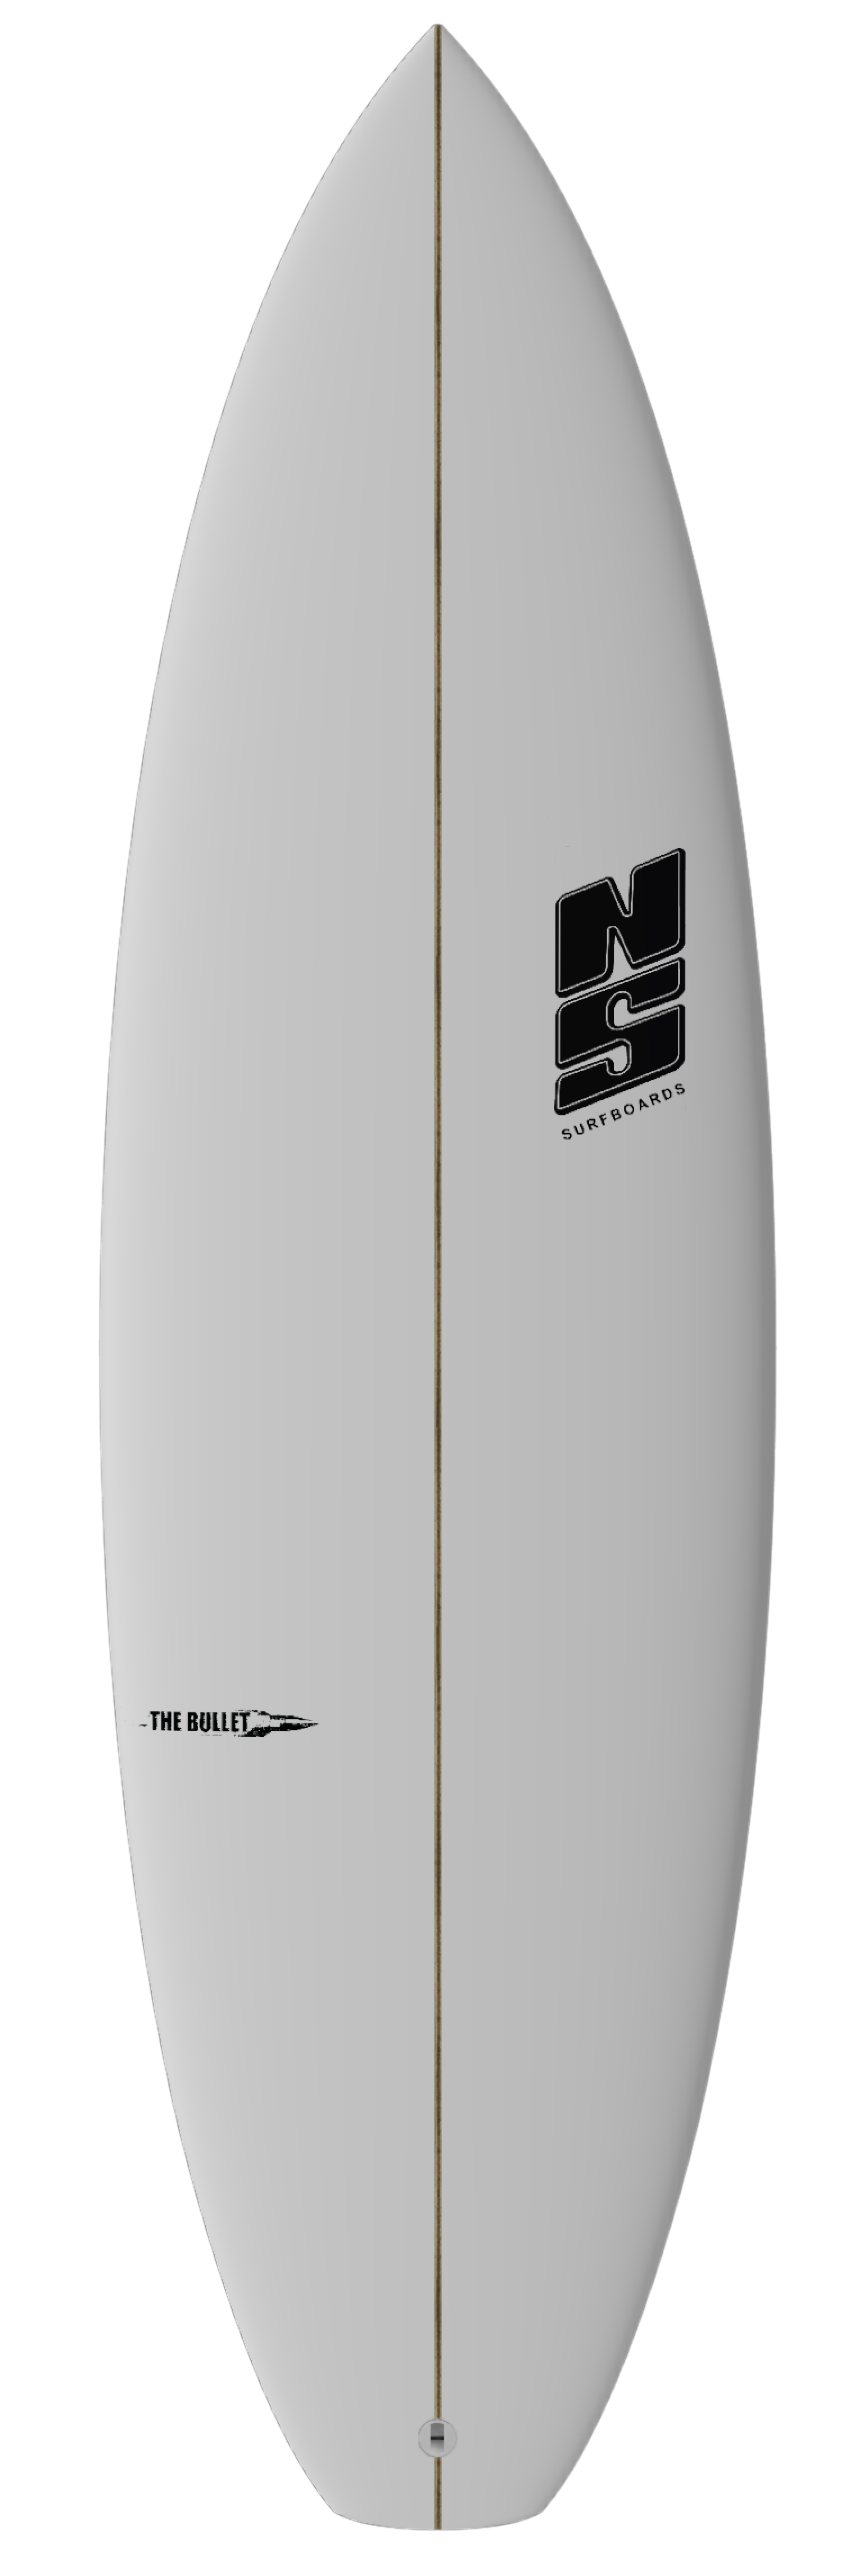 nigel semmens bullet surfboard in white